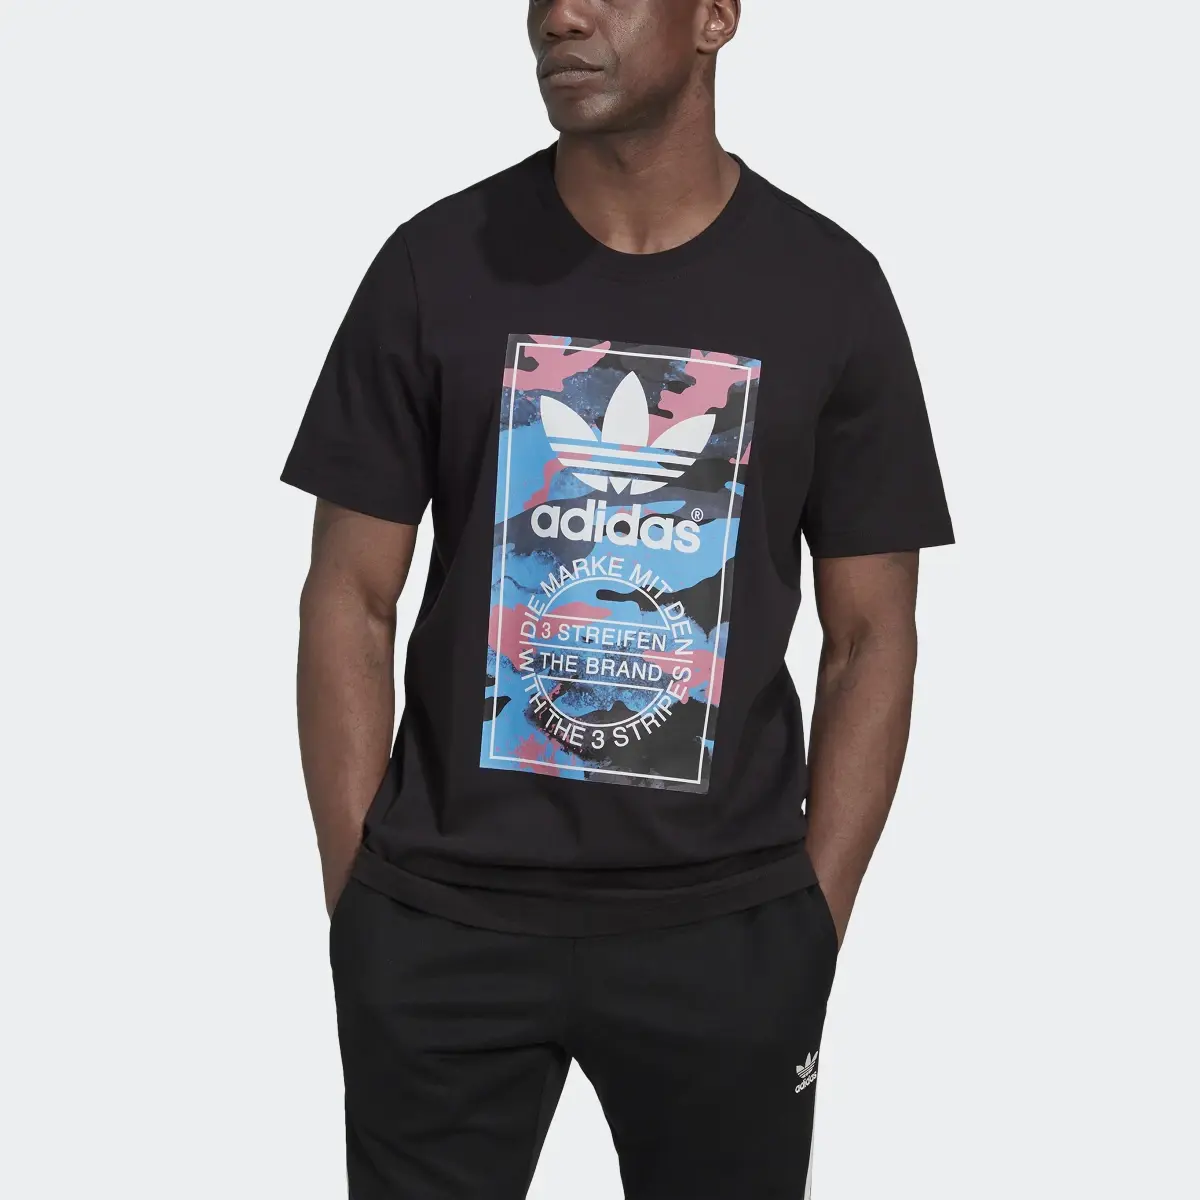 Adidas Camiseta Graphic Camo. 1